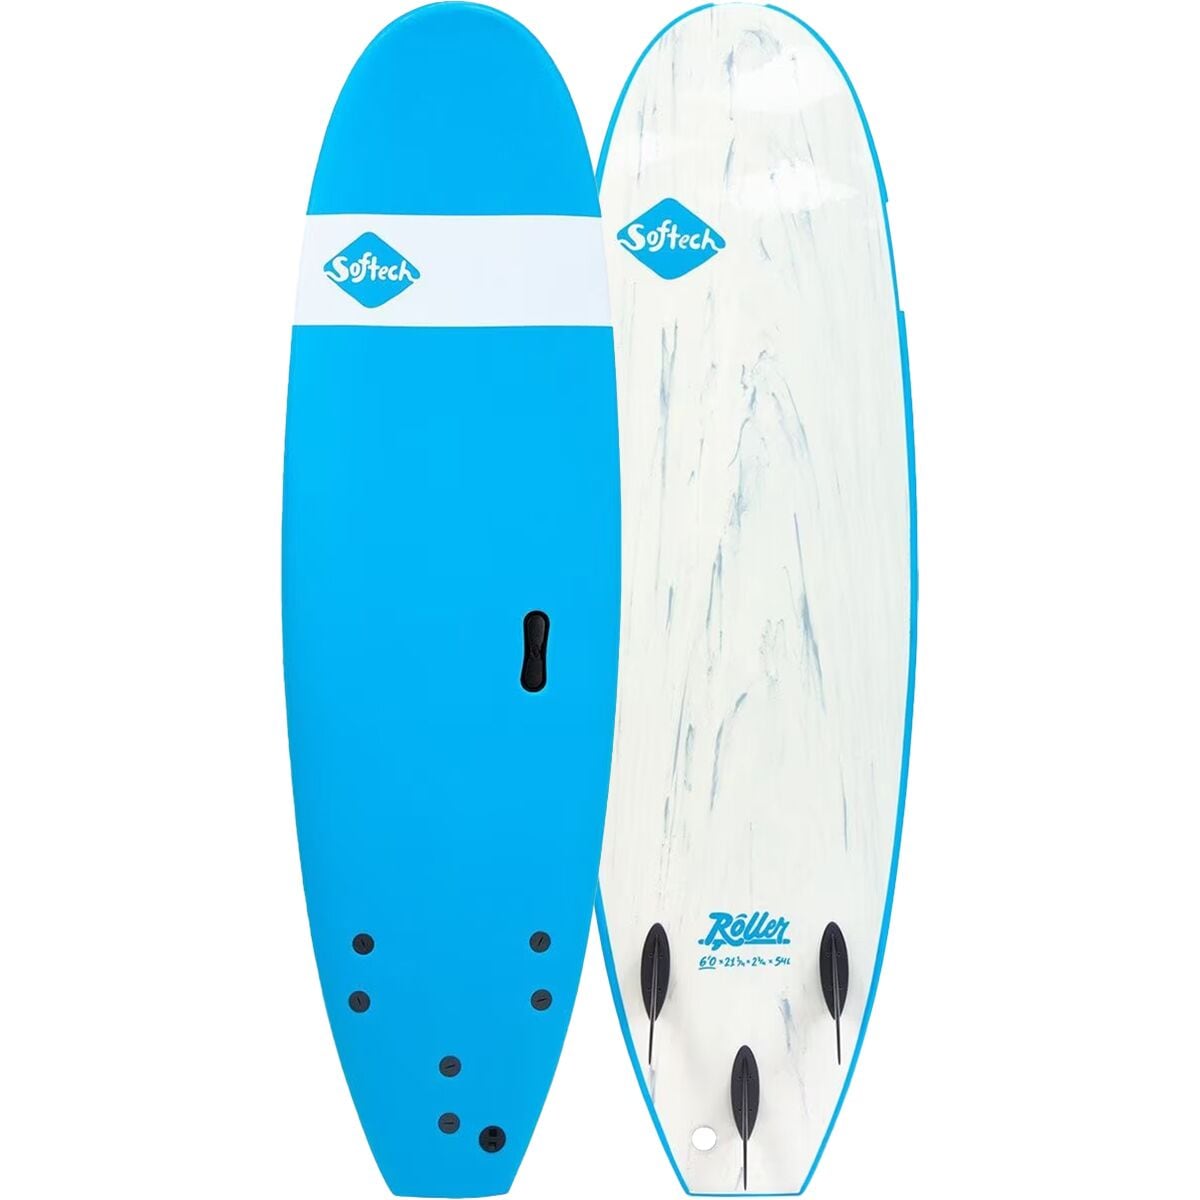 Softech Roller Shortboard Surfboard